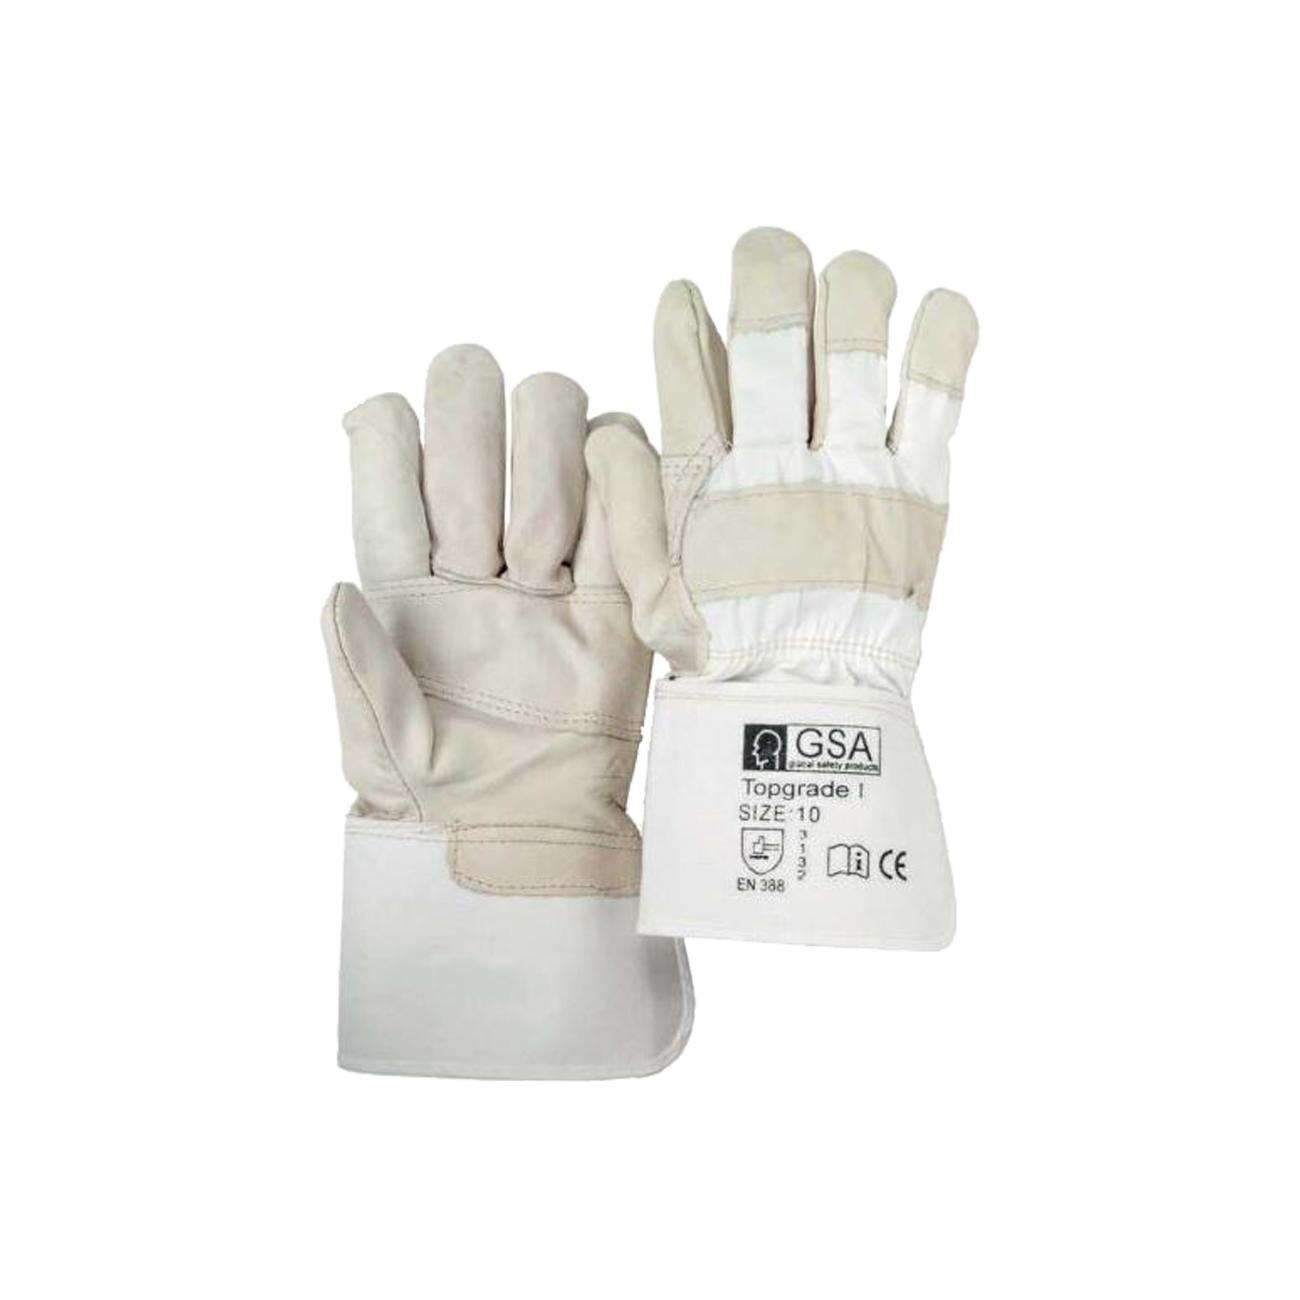 Ventileren Vallen Diversiteit ESE International - PSA Topgrade 1 handschoenen maat 10 met palmversterking